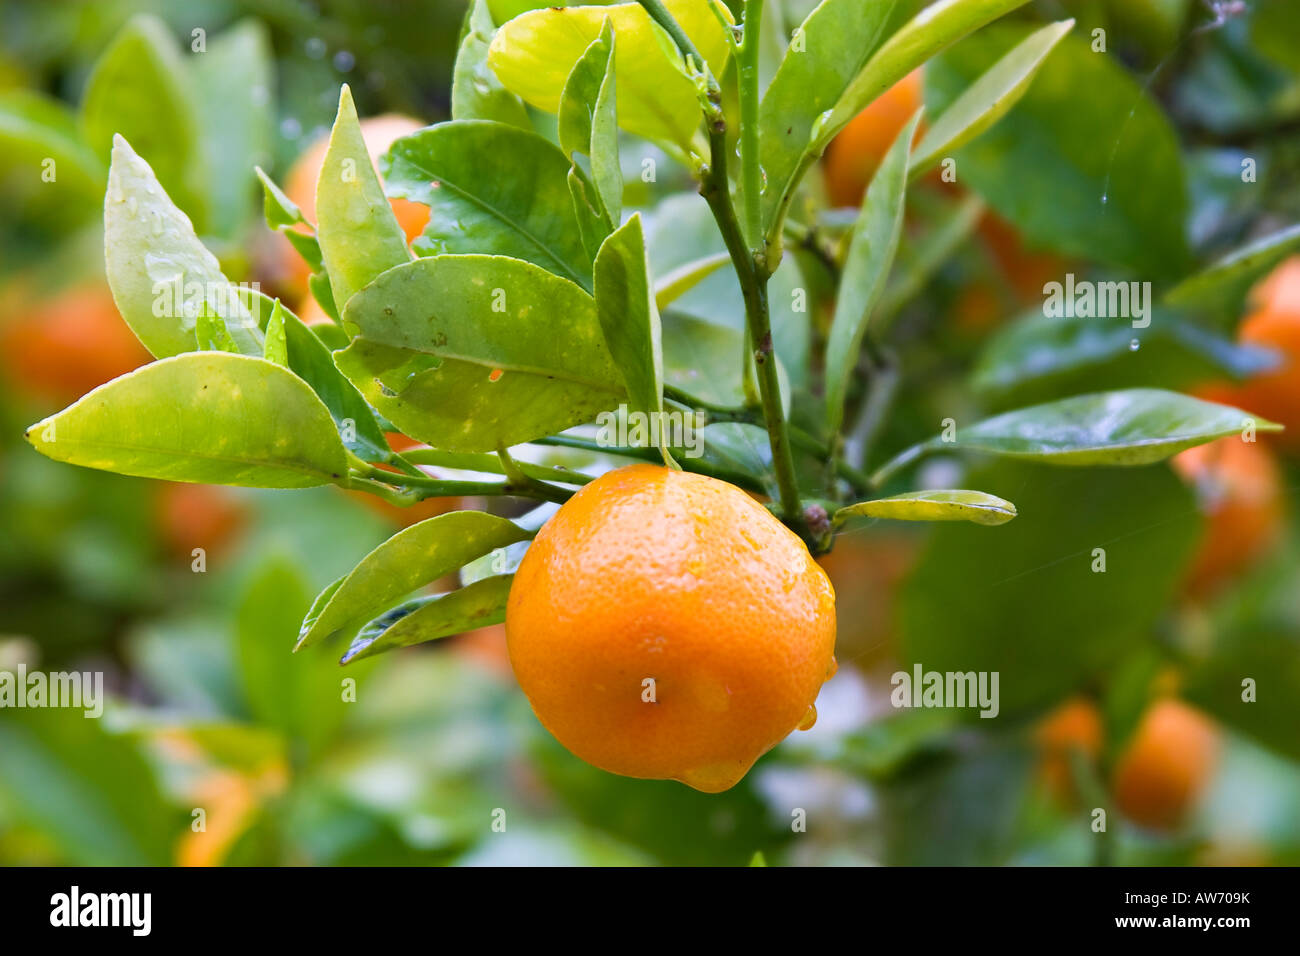 Oranges on tree. UK Stock Photo